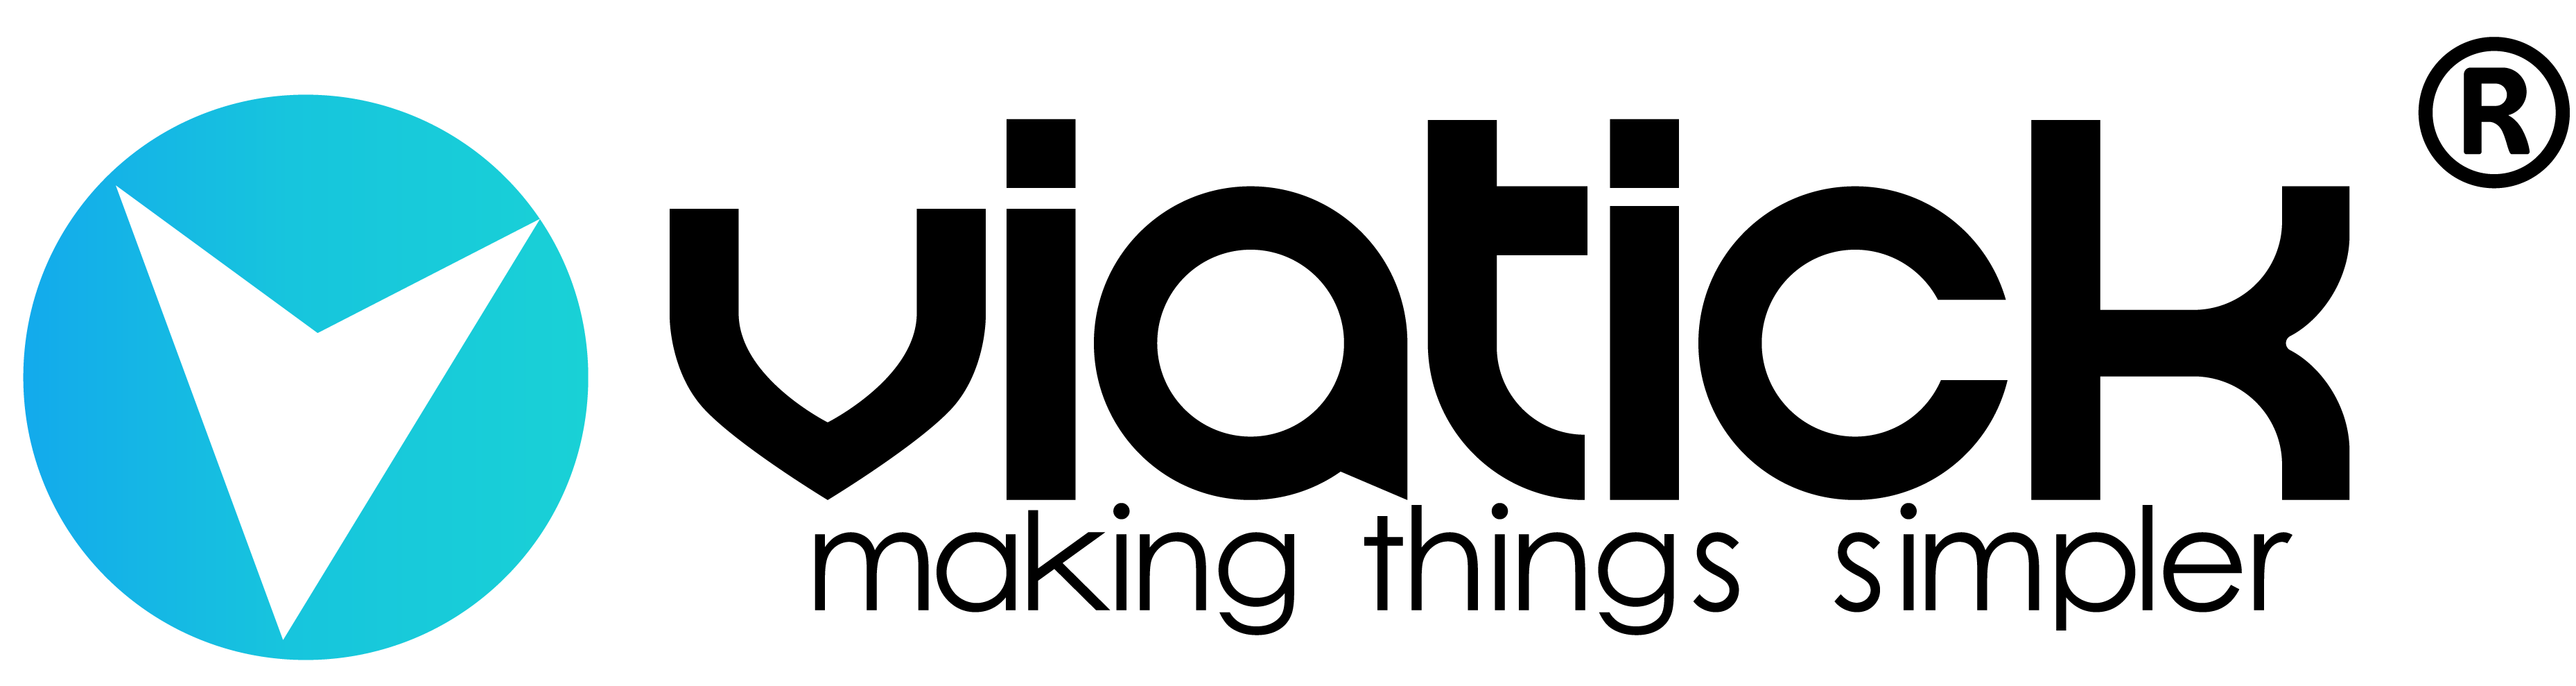 Viatick Logo